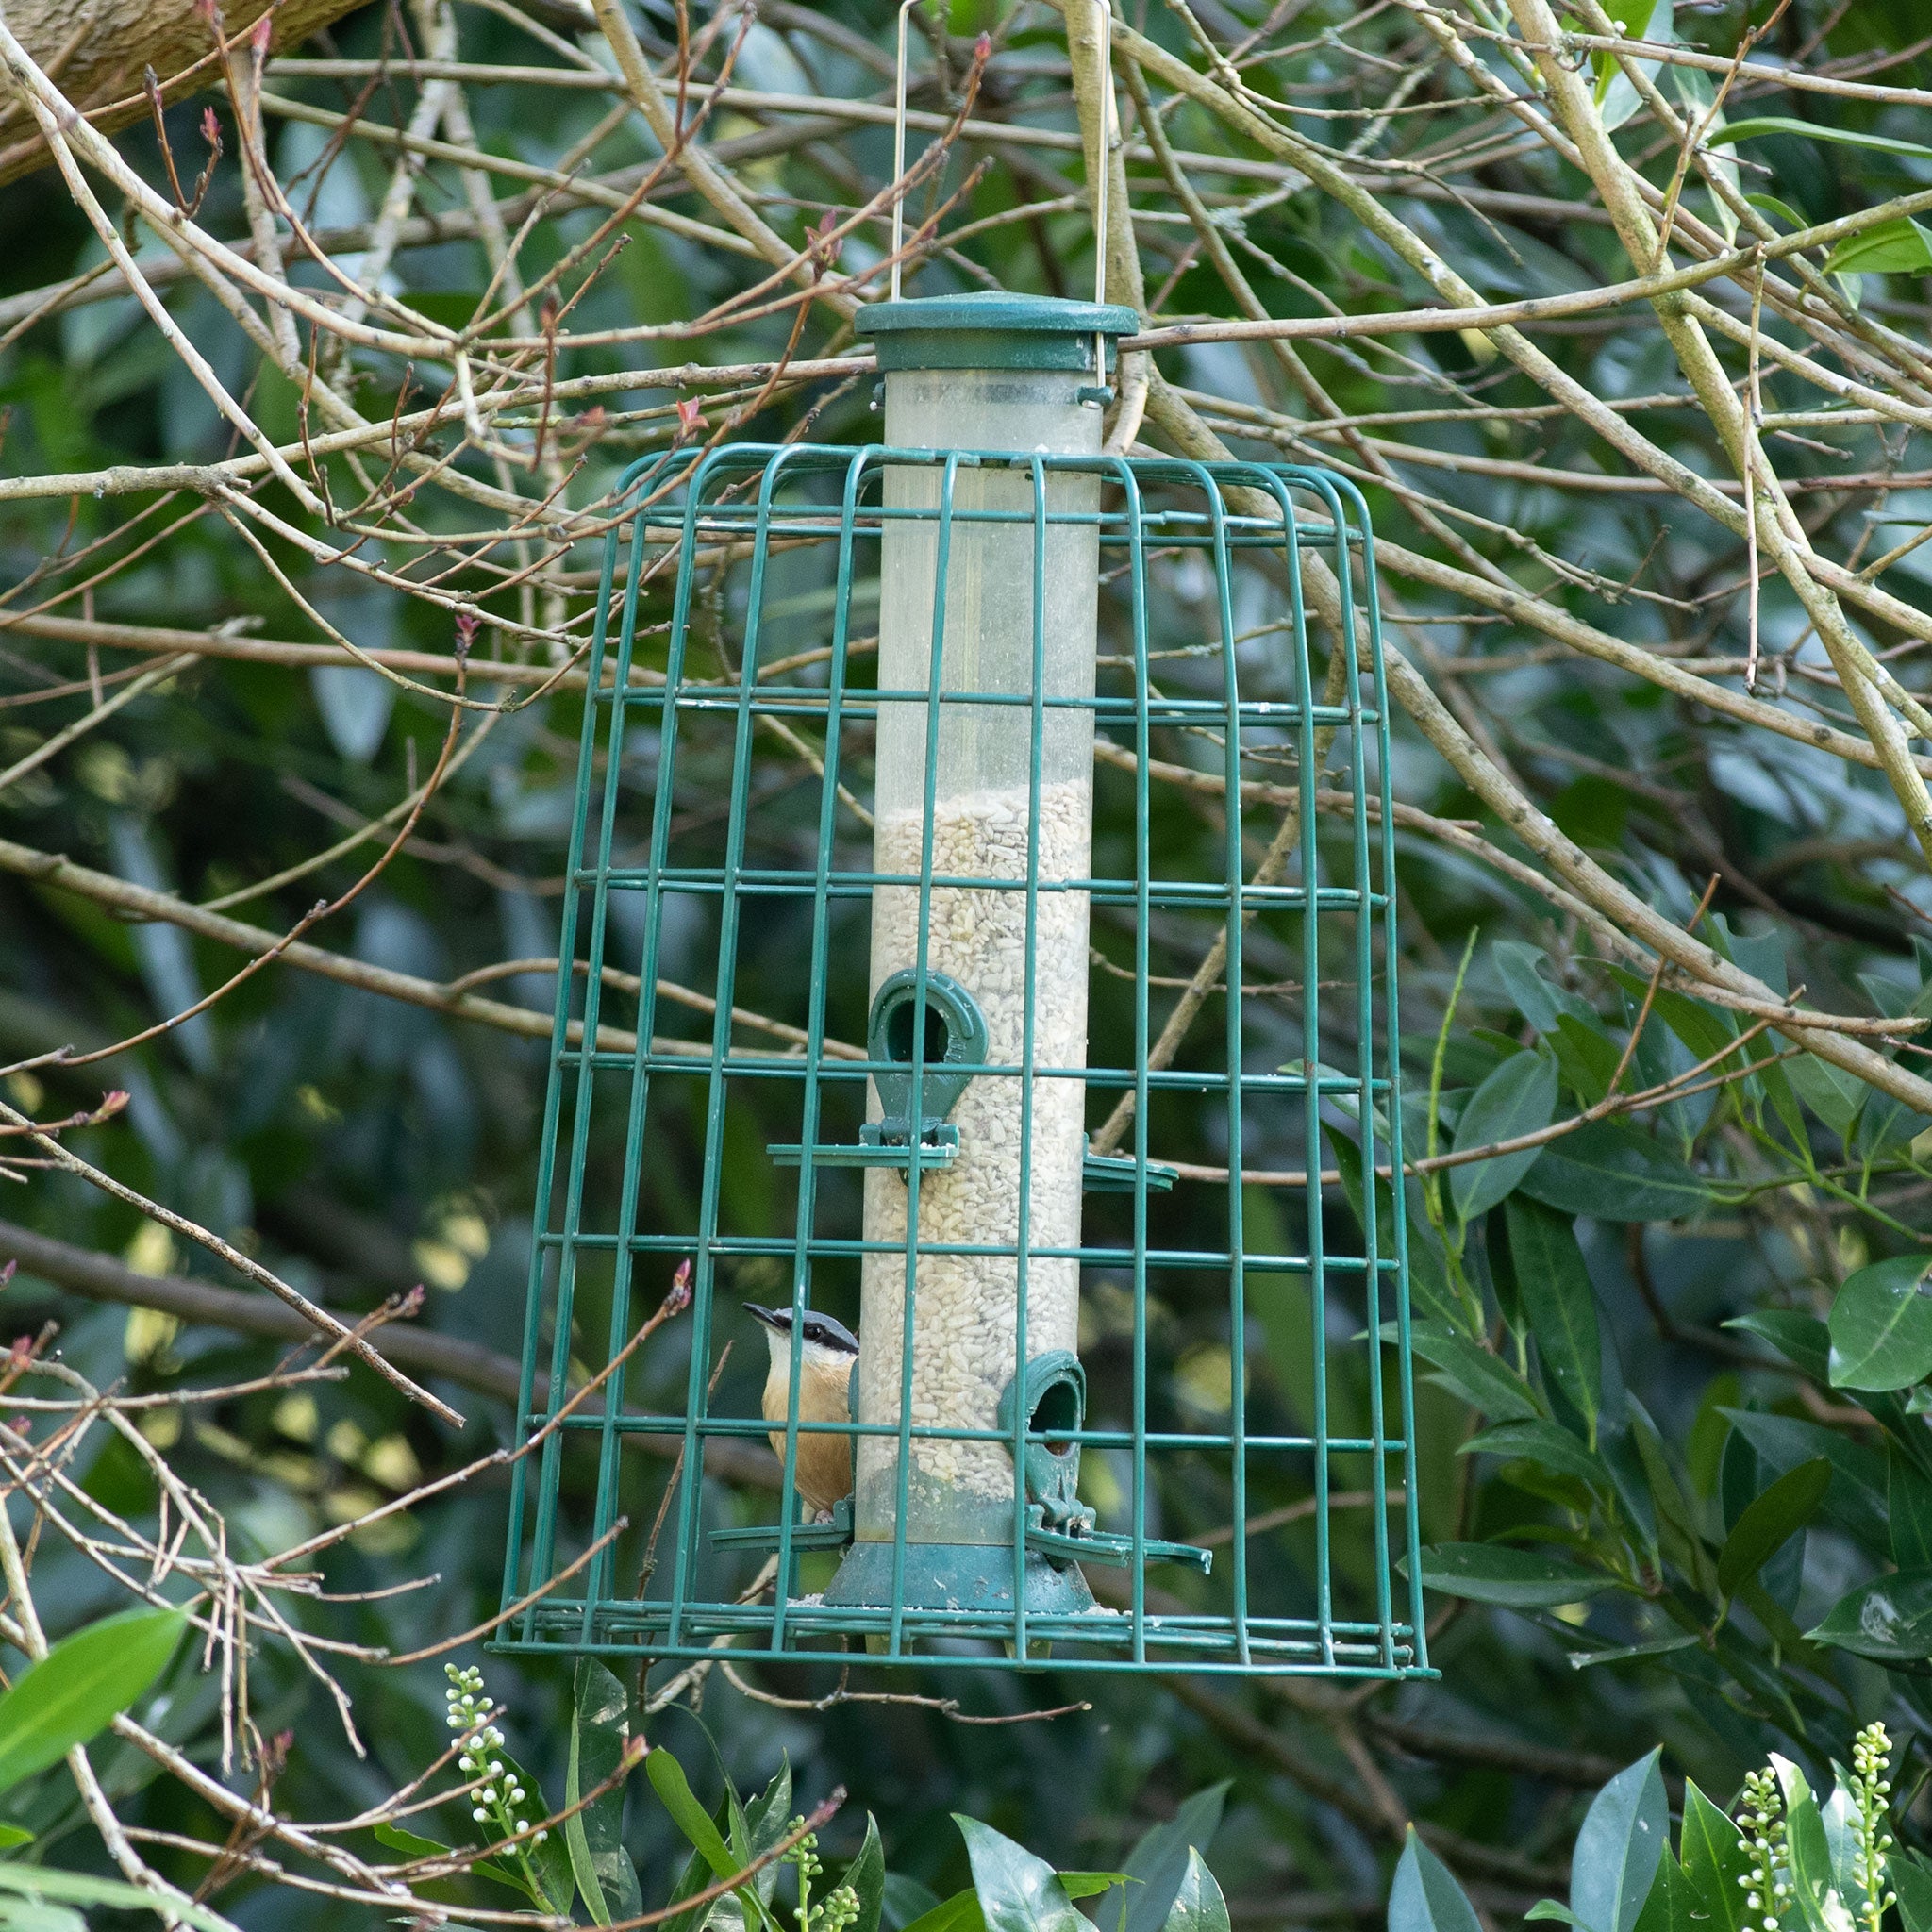 Garden bird in a caged seed feeder